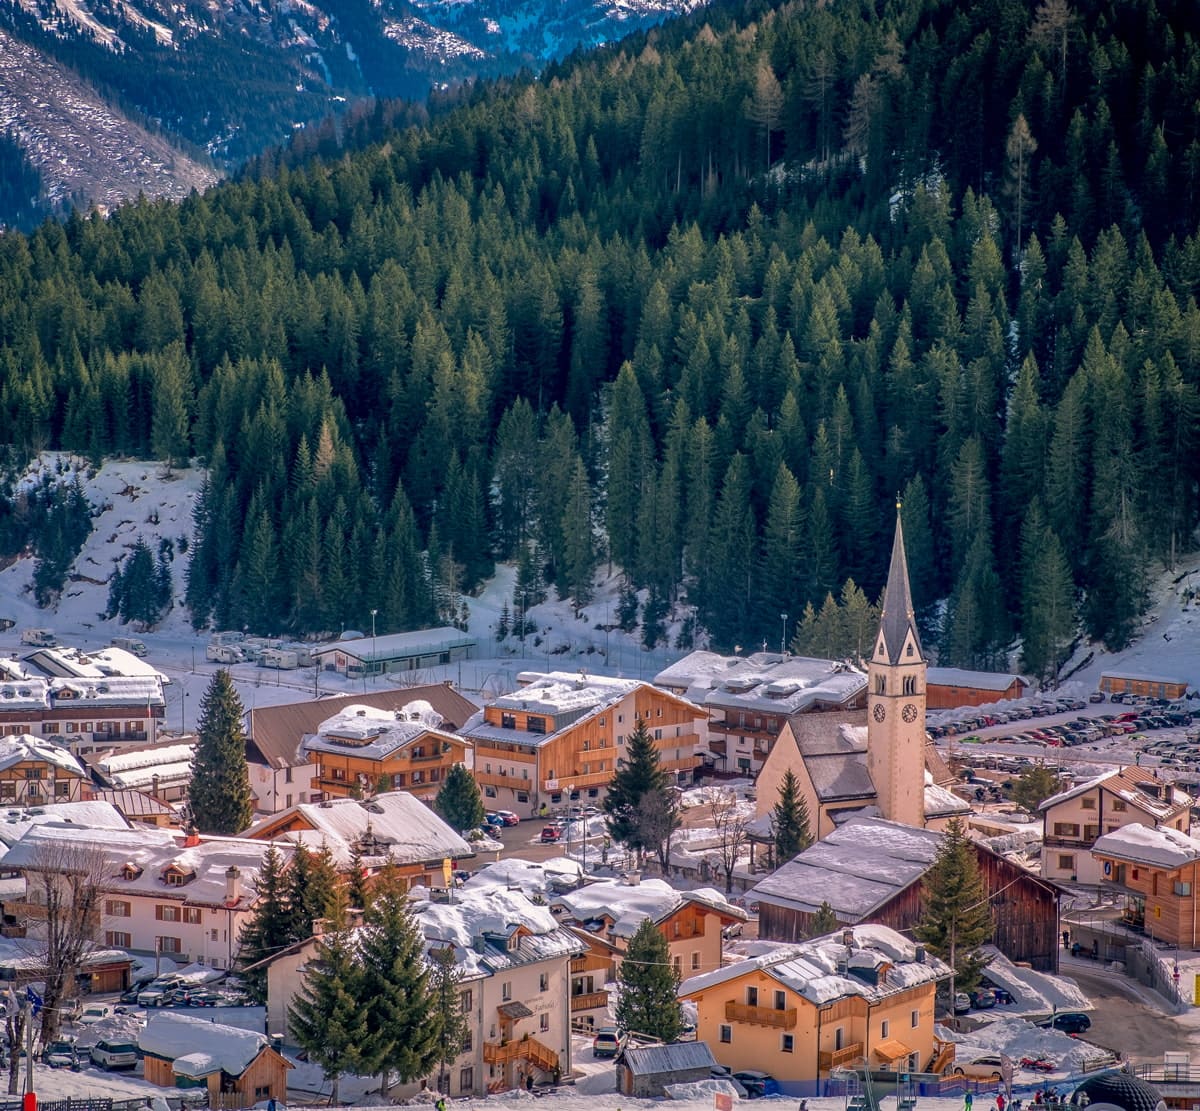 Ski resort in the Dolomites